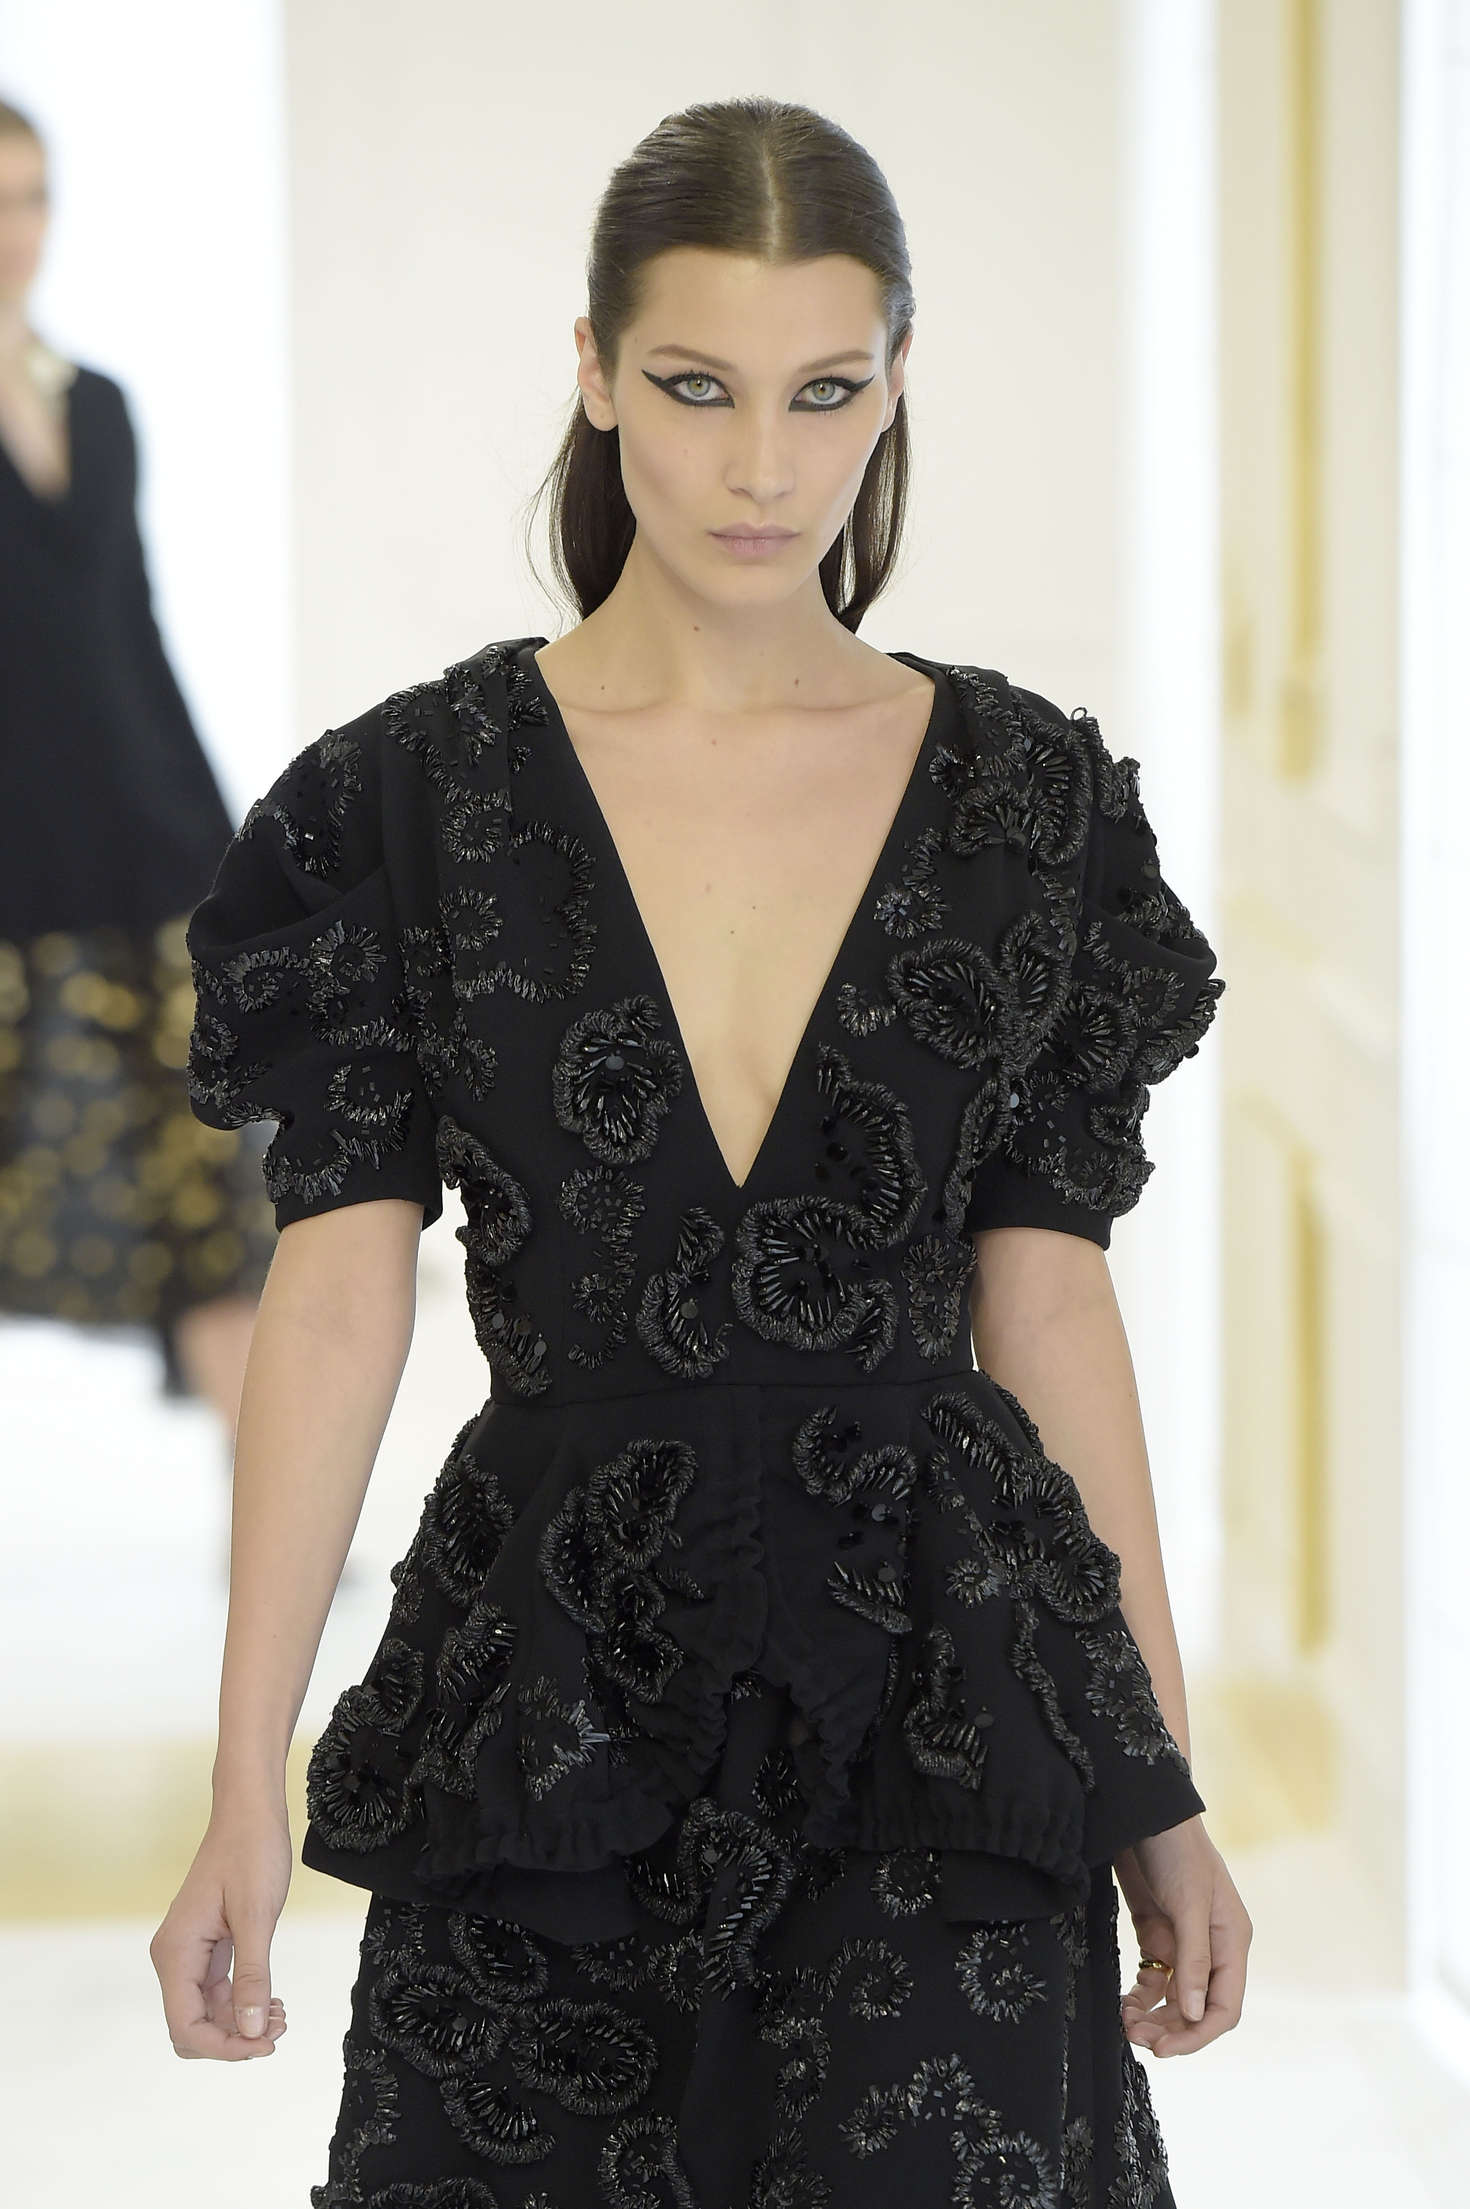 Bella Hadid: Christian Dior Fashion Haute-Couture 2017 -01 – GotCeleb